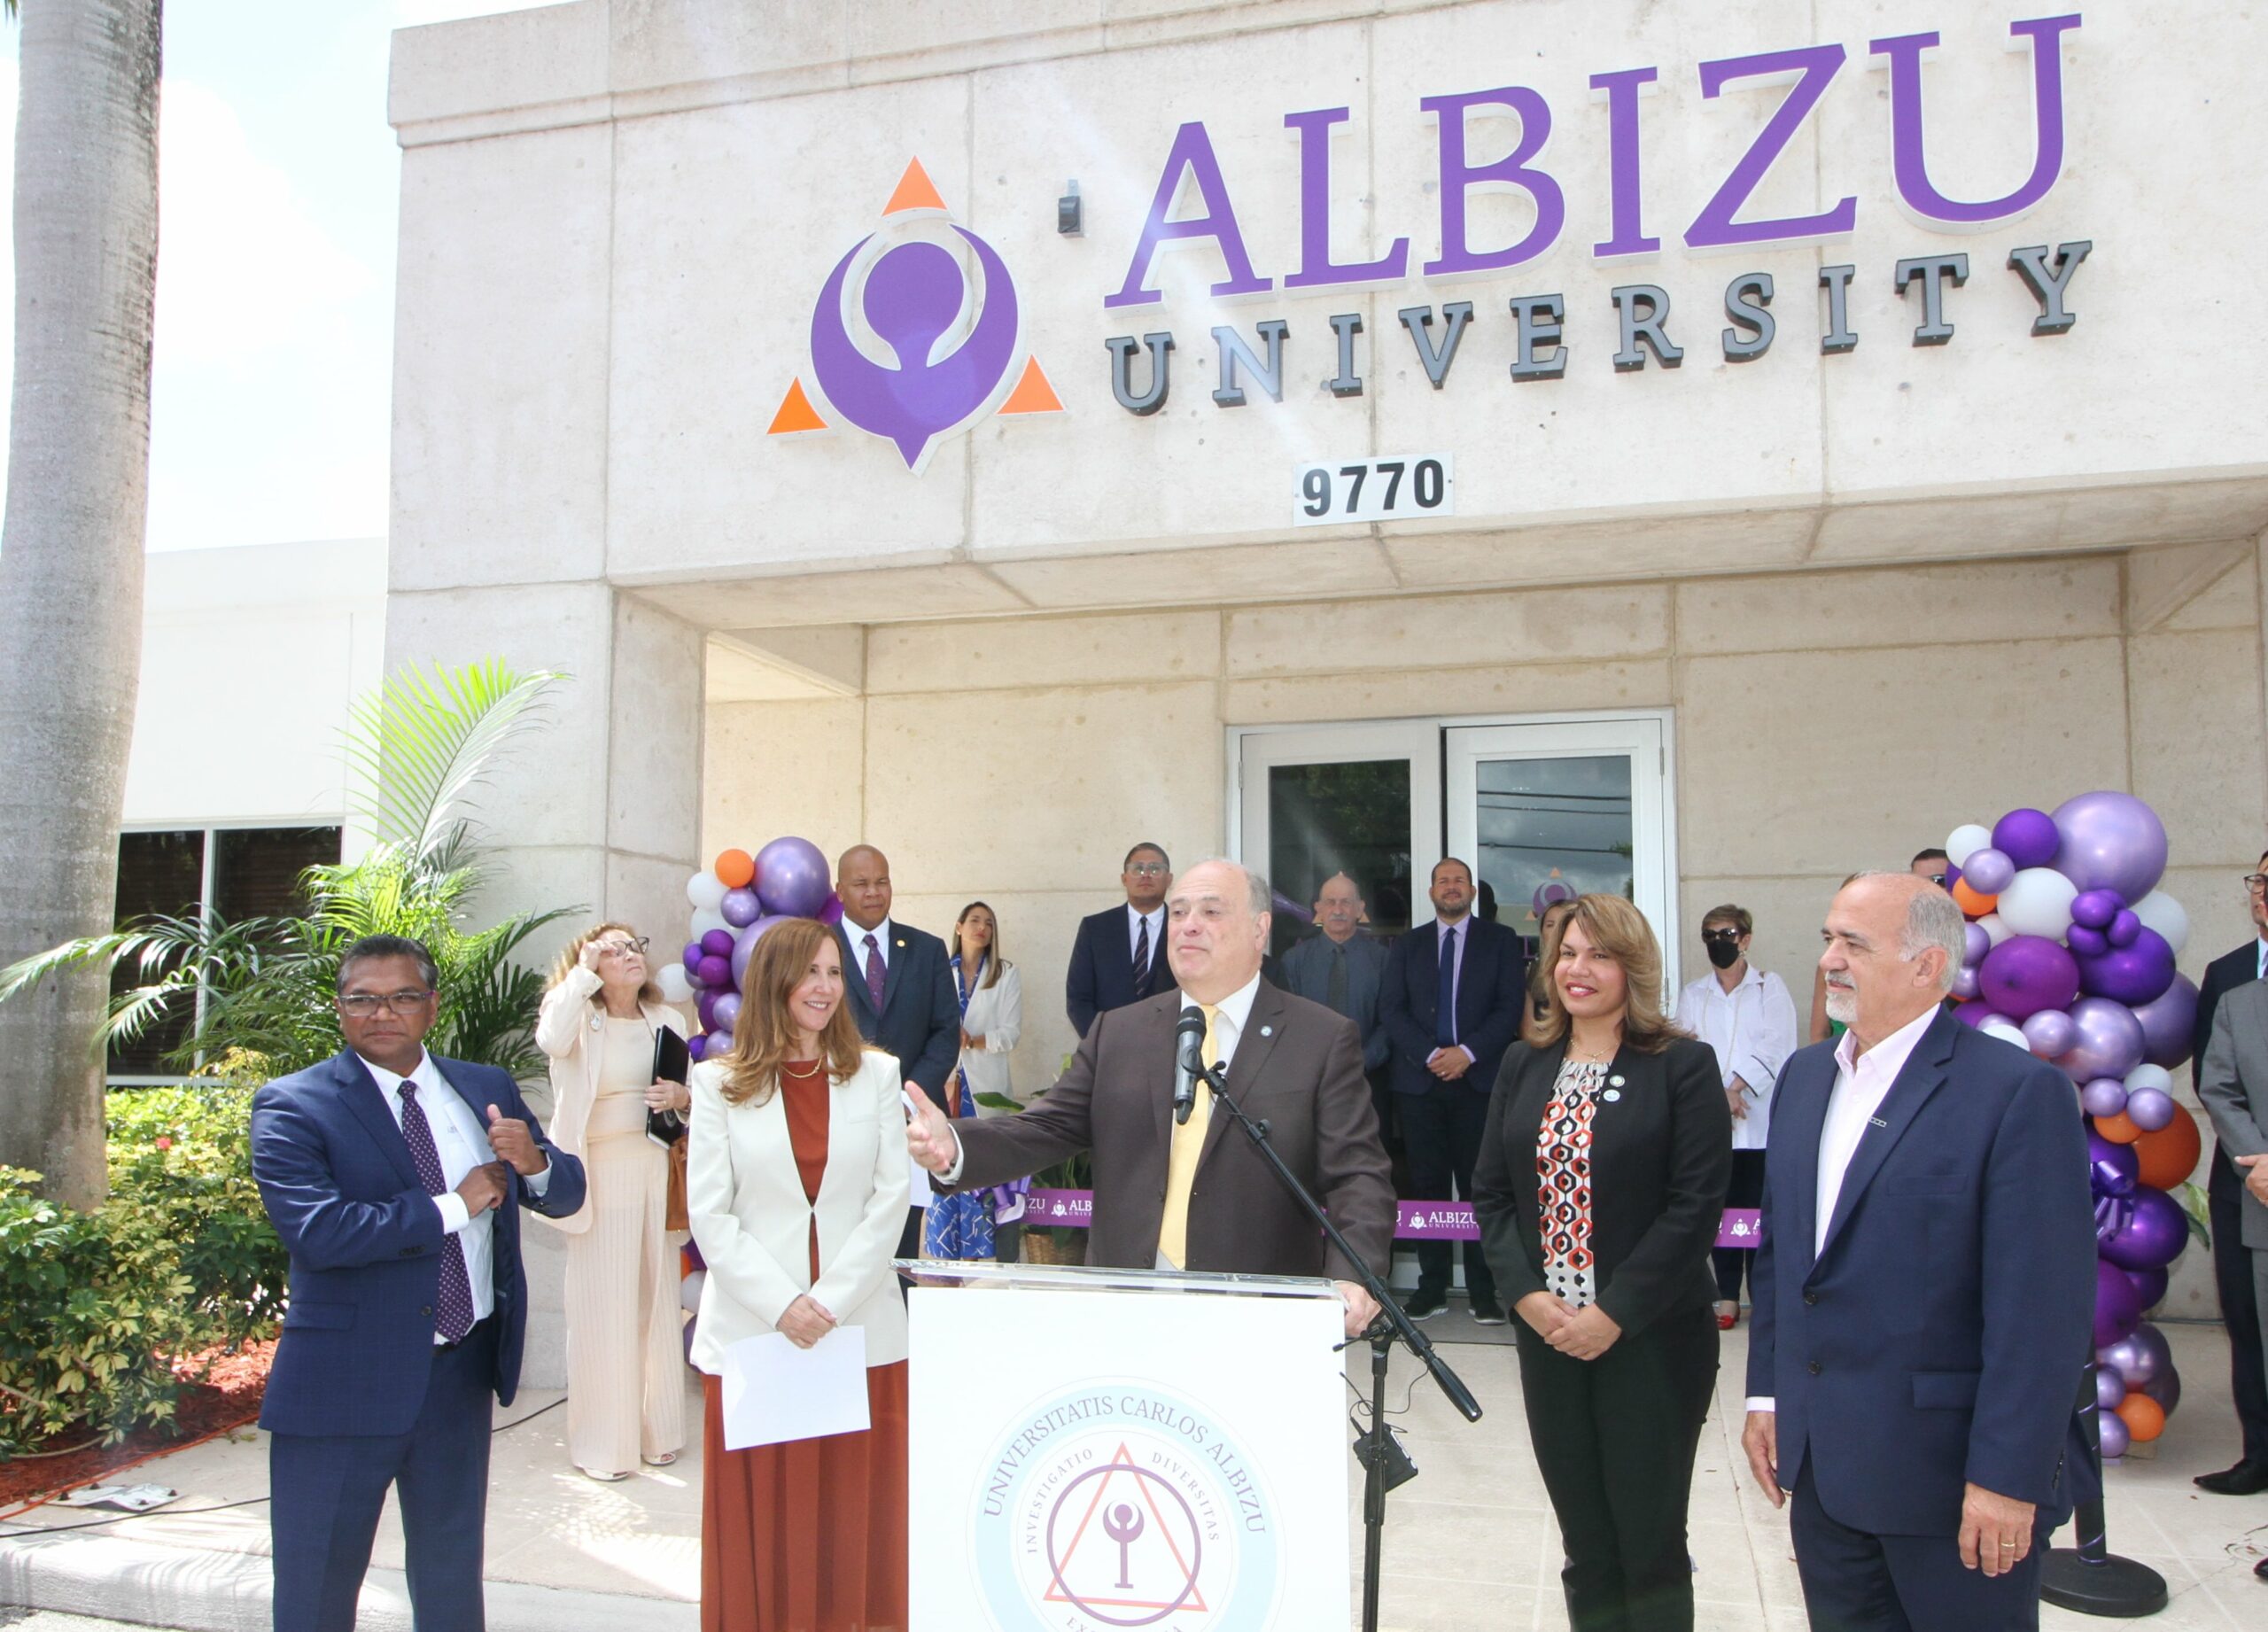 Albizu University